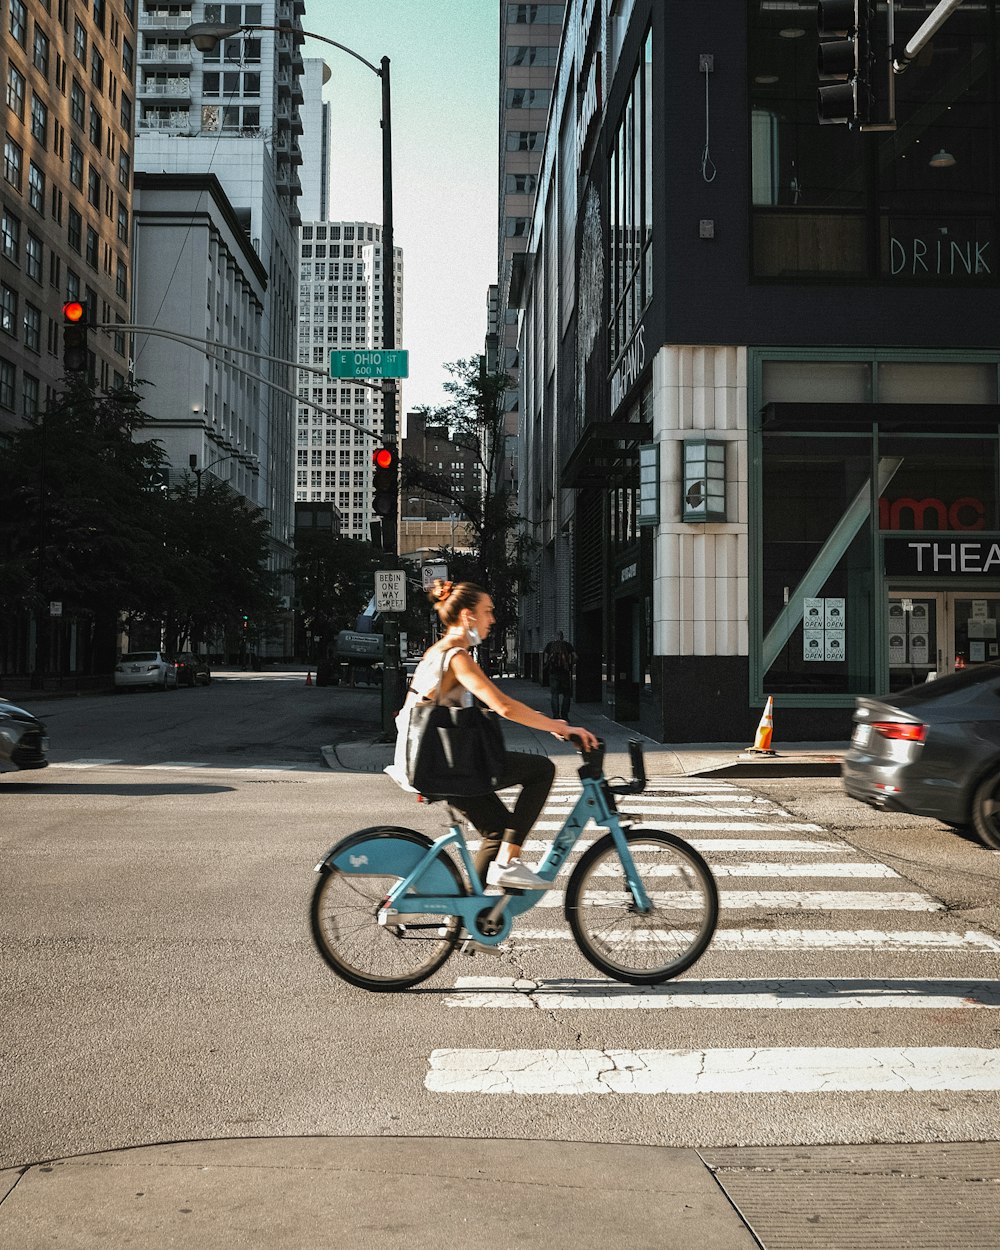 man in black shirt riding bicycle on pedestrian lane during daytime